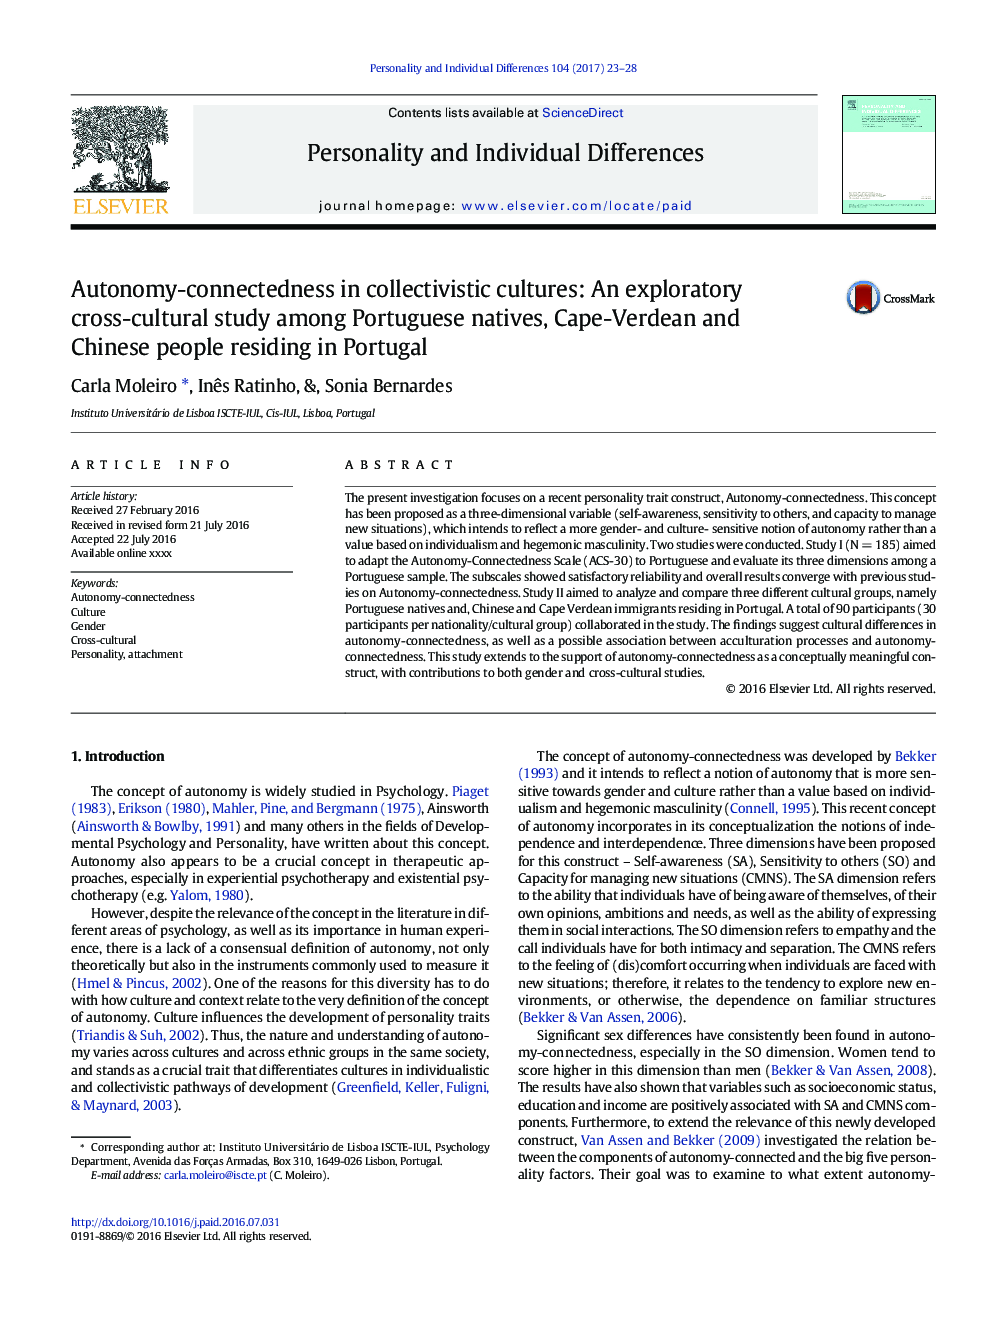 وابستگی خودمختاری در فرهنگهای همگانی: یک مطالعه بین فرهنگی اکتشافی در میان بومیان پرتغال، کیپ وردان و مردم چینی که در پرتغال زندگی می کنند 